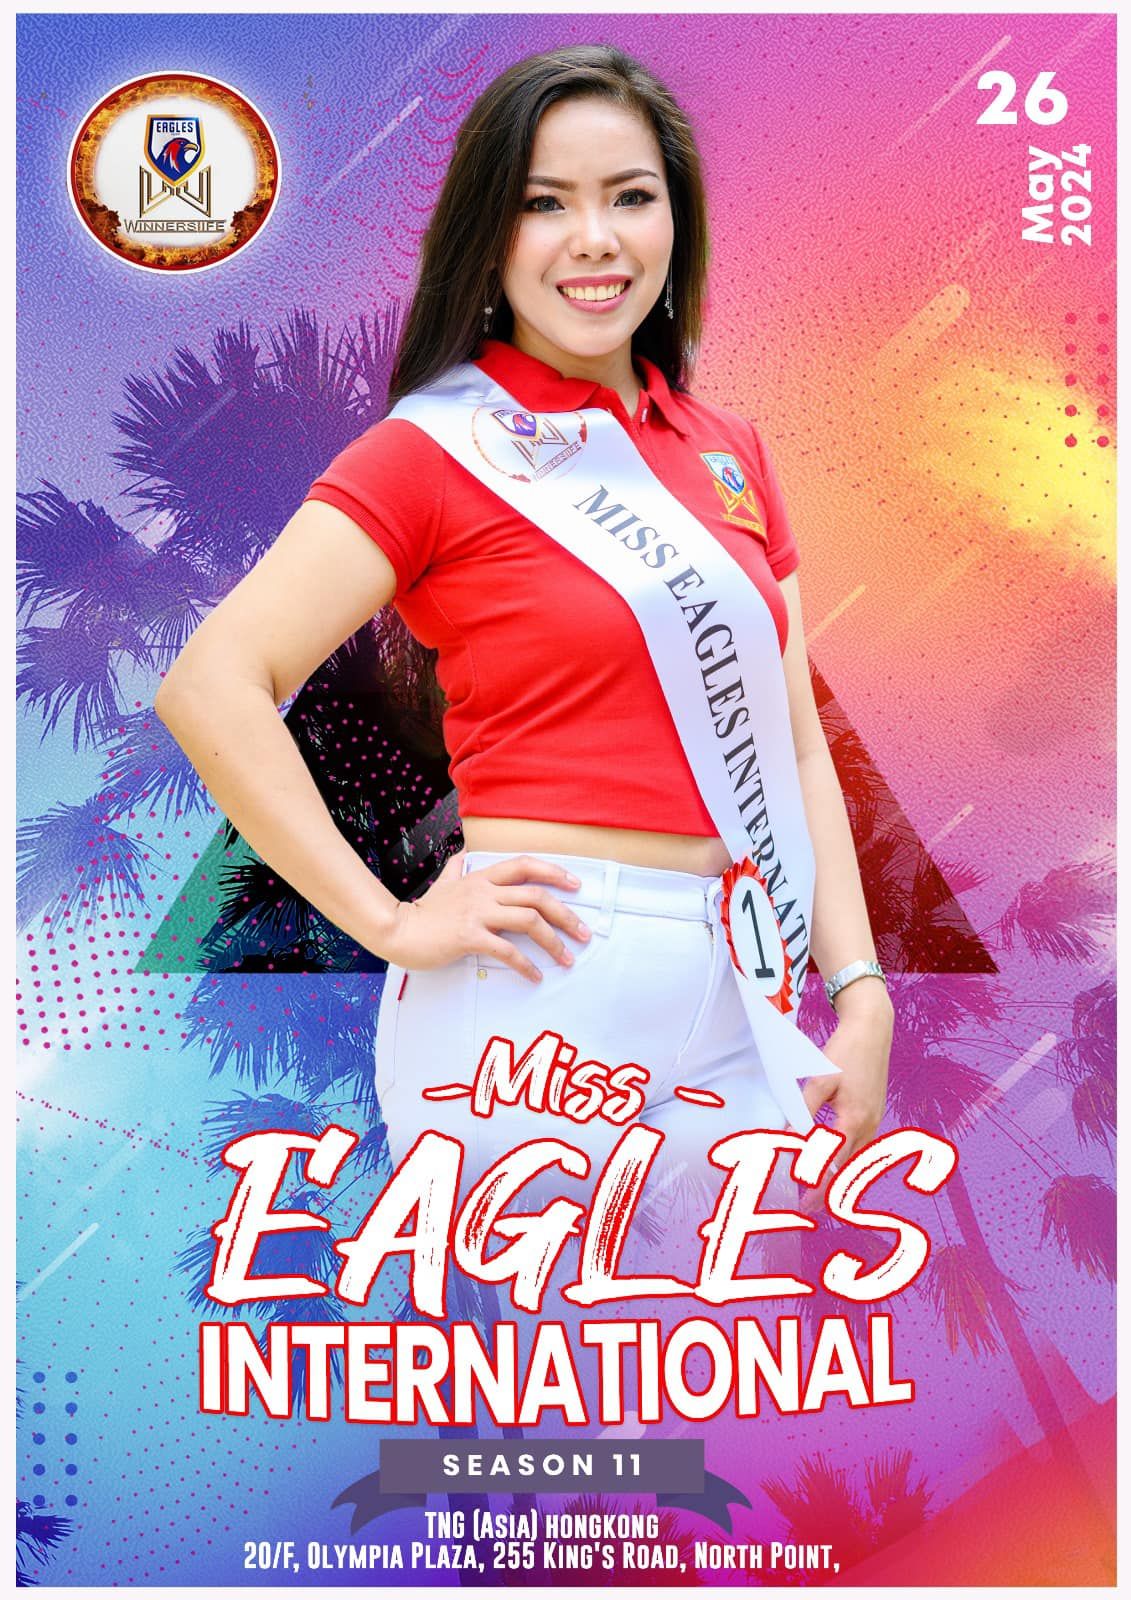 Miss Eagles International Winnerslife Season11 Finale